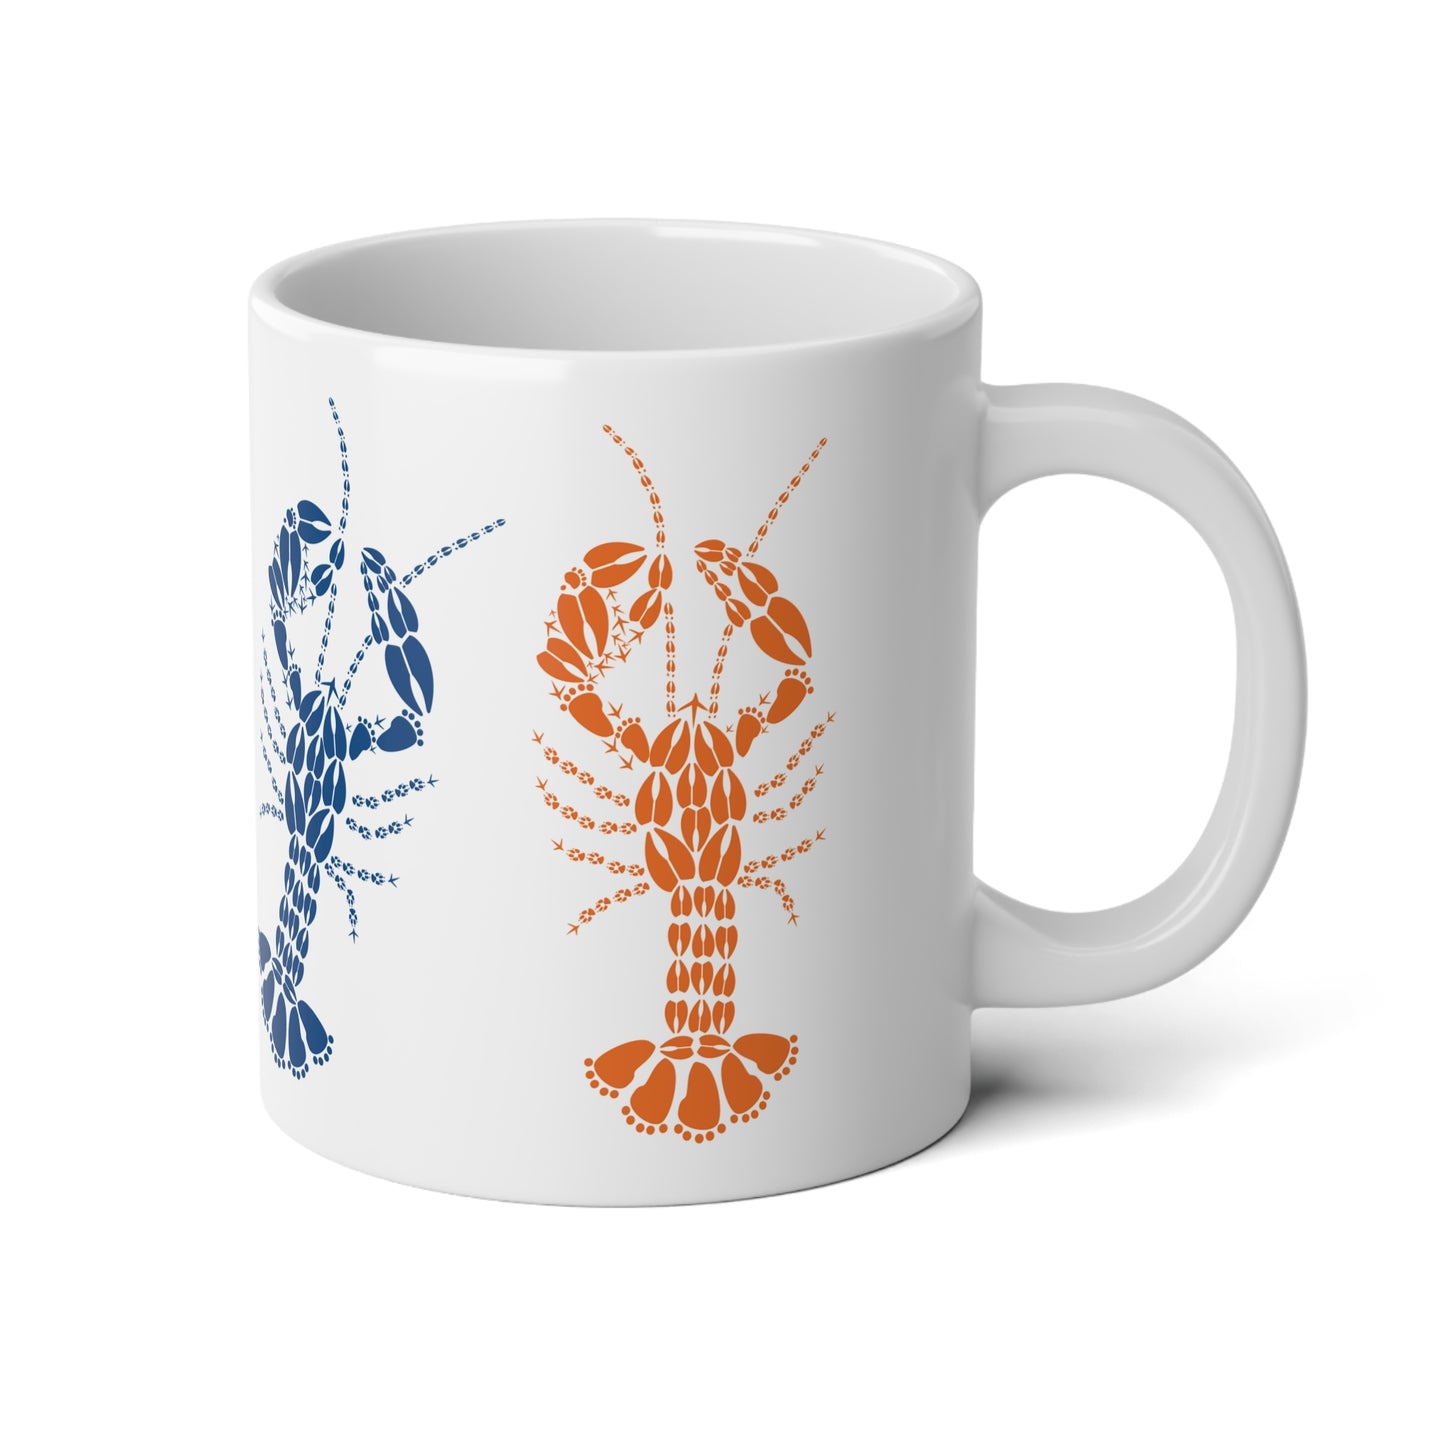 Multi Colored Lobster Tracks Jumbo Mug, 20oz